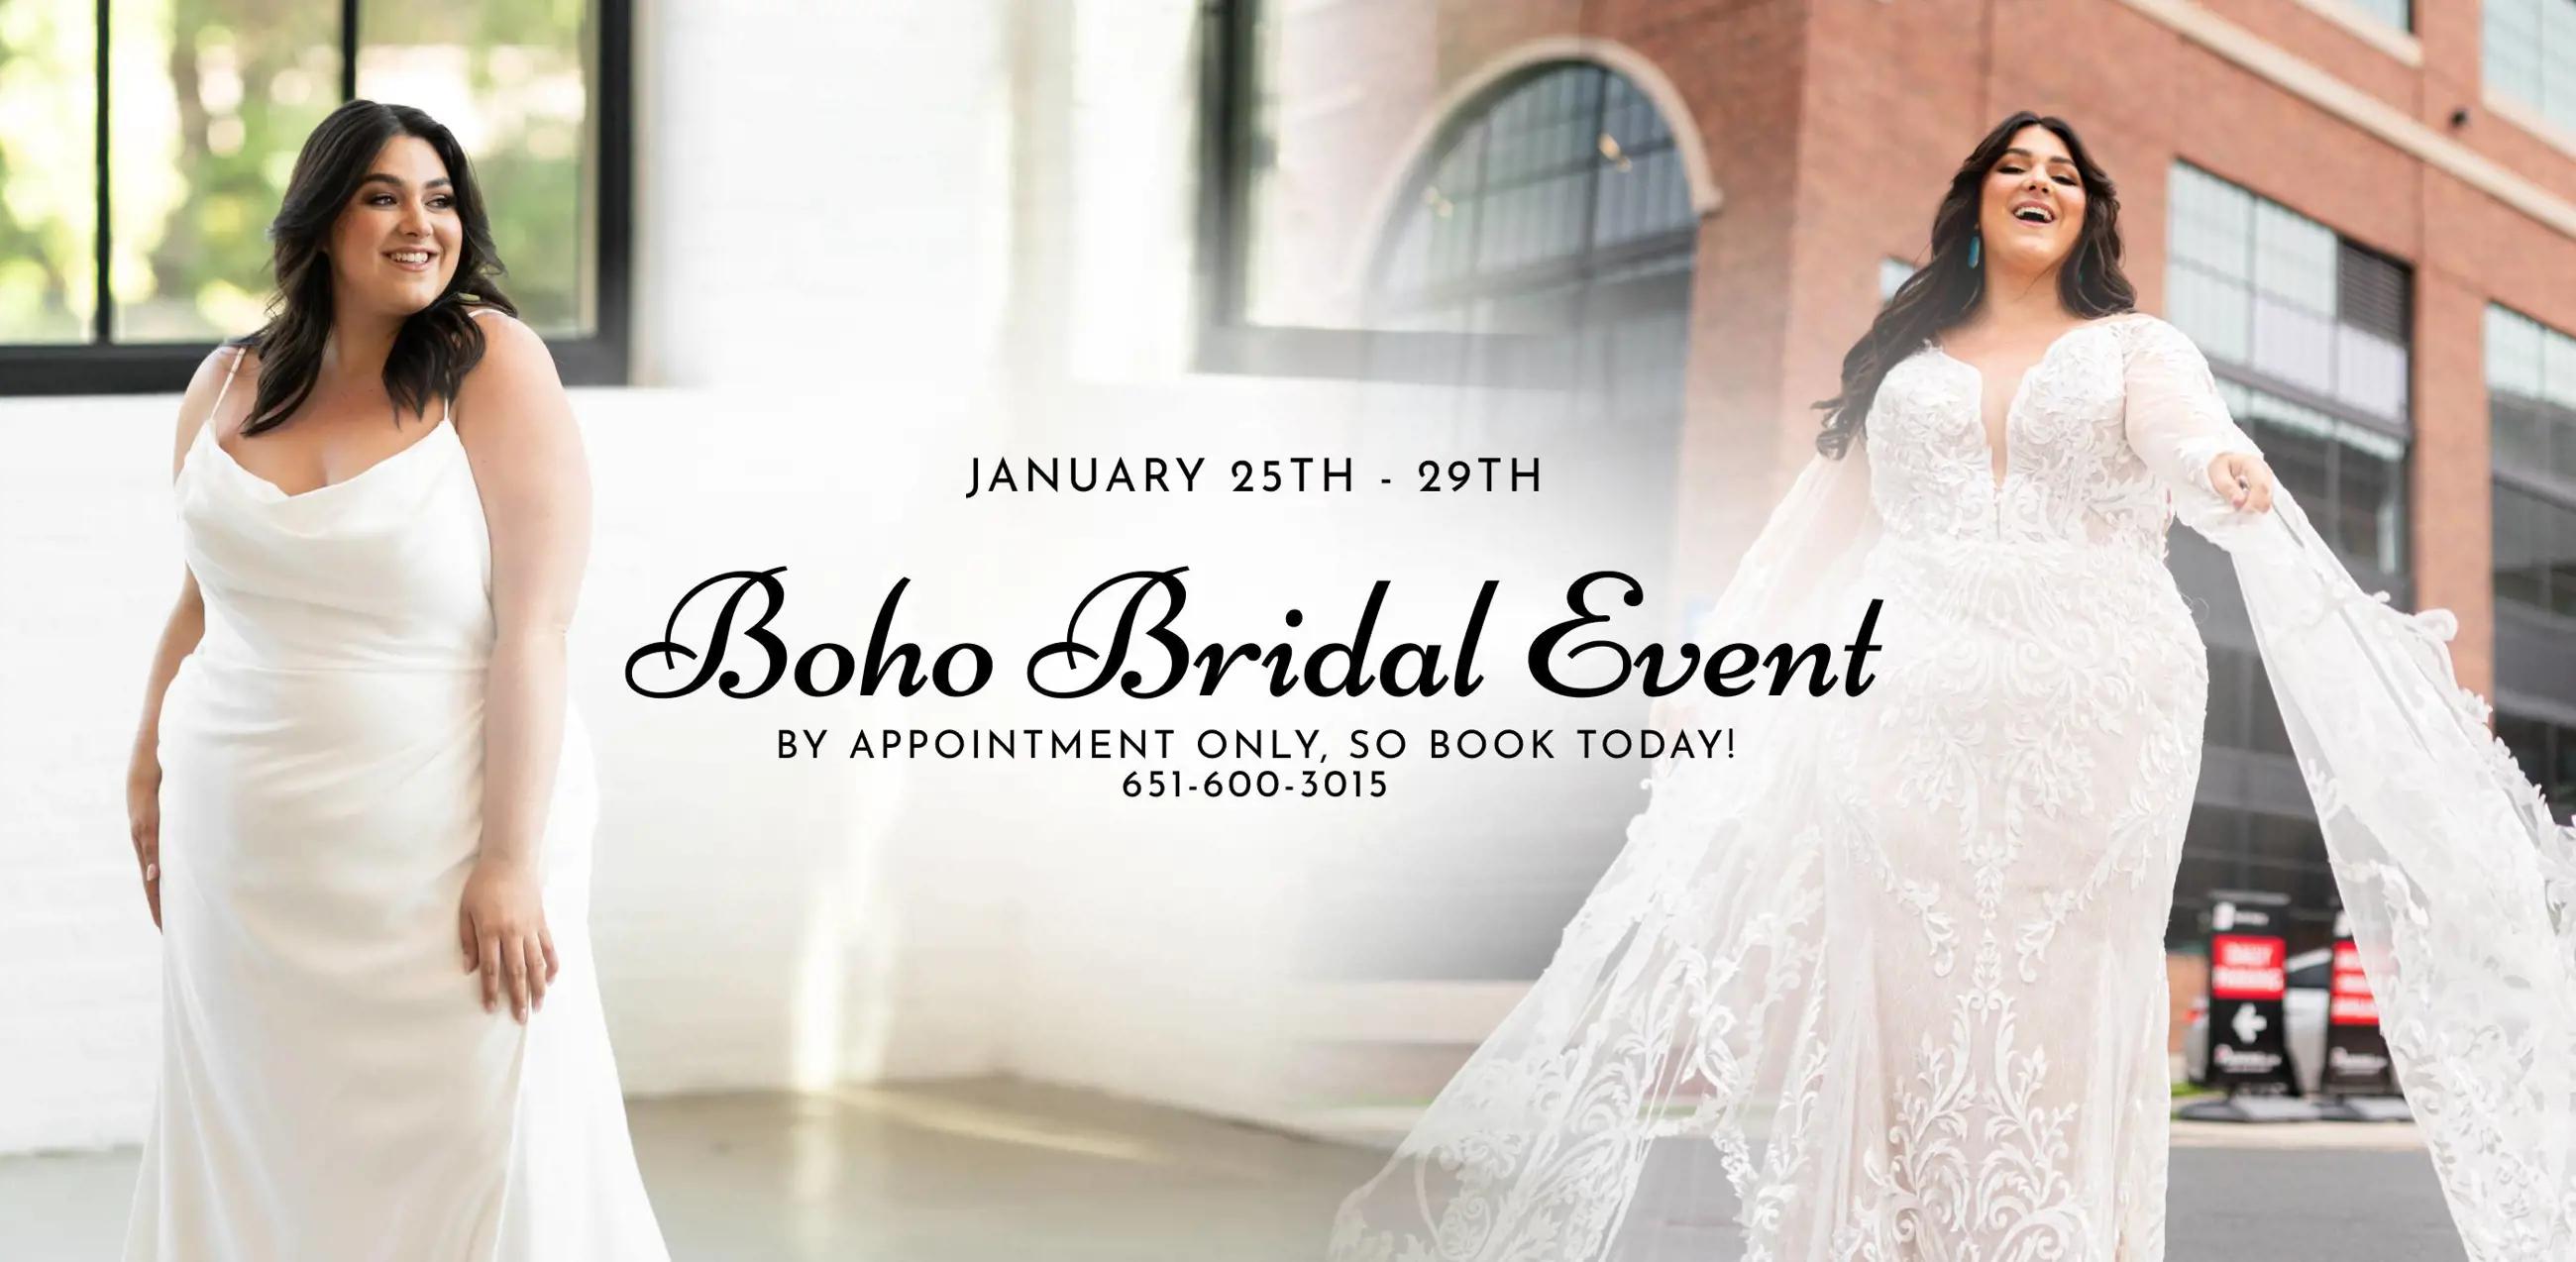 "Boho Bridal Event" banner for desktop